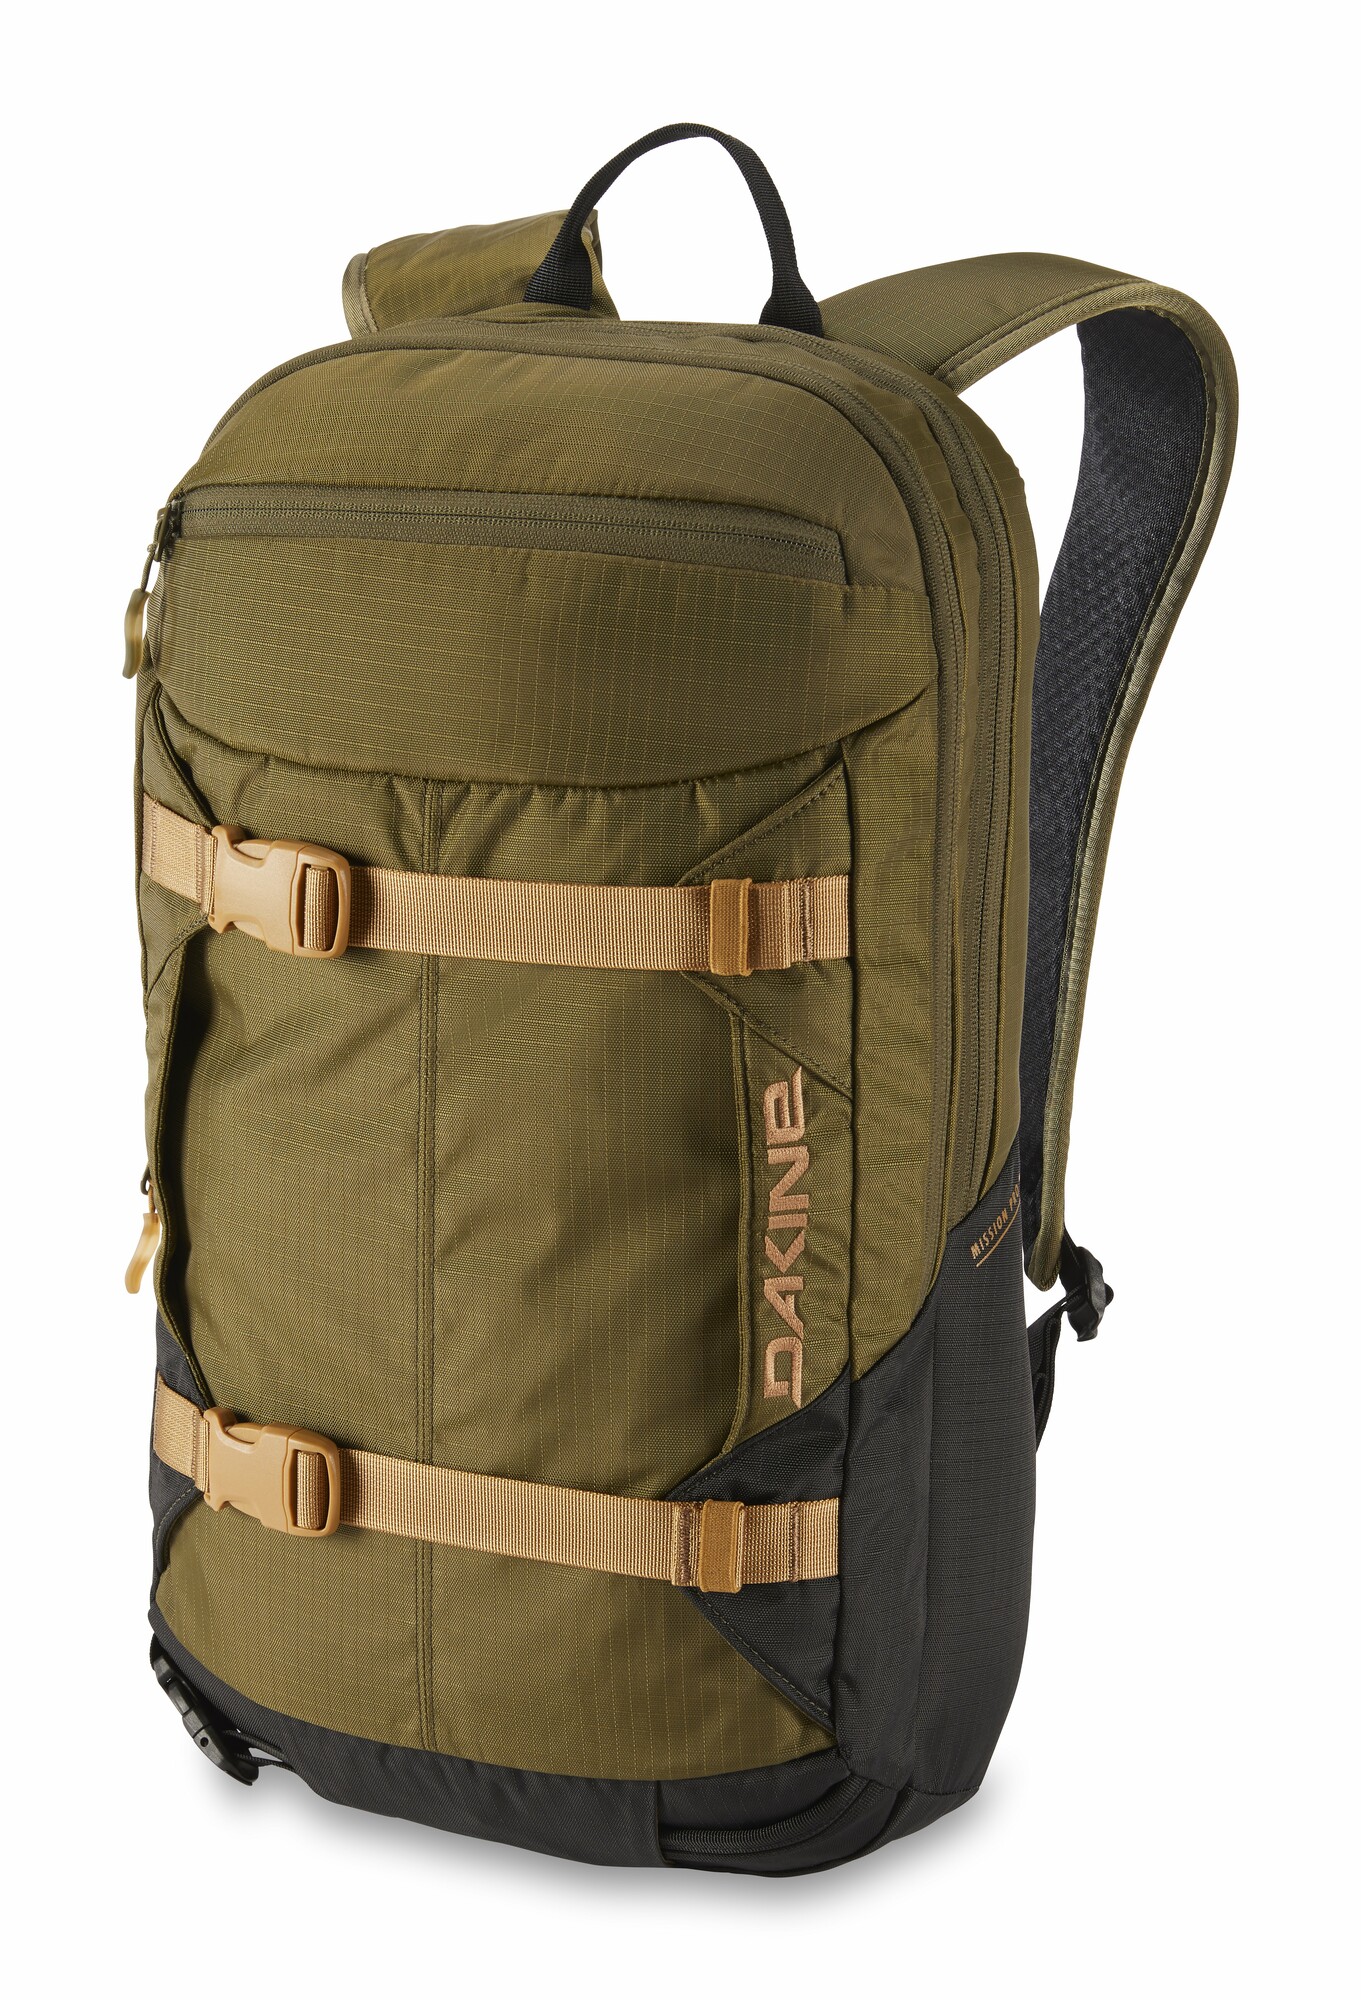 Dakine Mission Pro 18L backpack dark olive / black